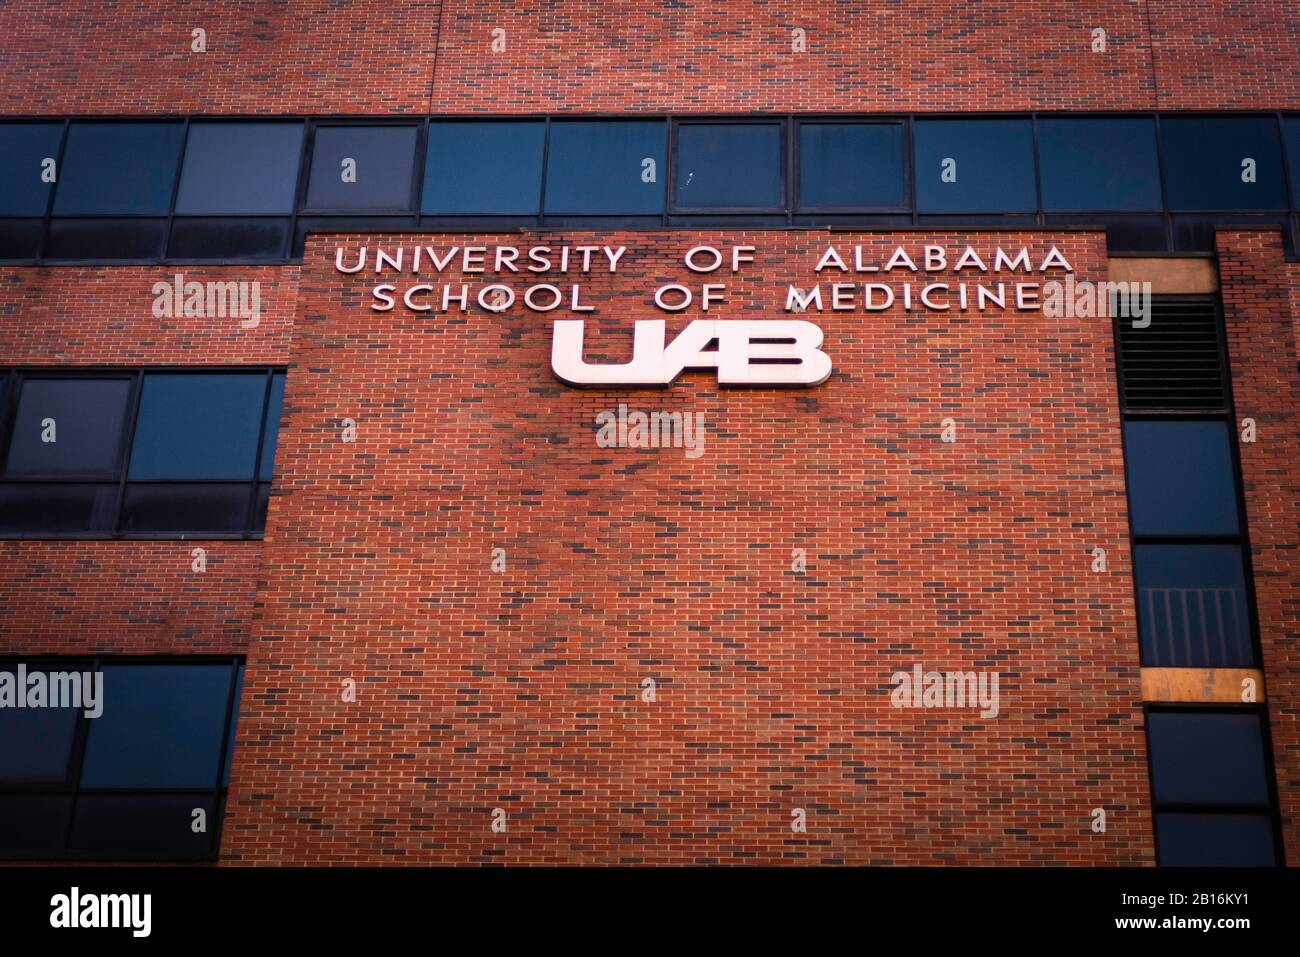 Tuscaloosa, Alabama - 8 de febrero de 2020: Campus universitario de la Universidad de Alabama Crimson Tide Foto de stock